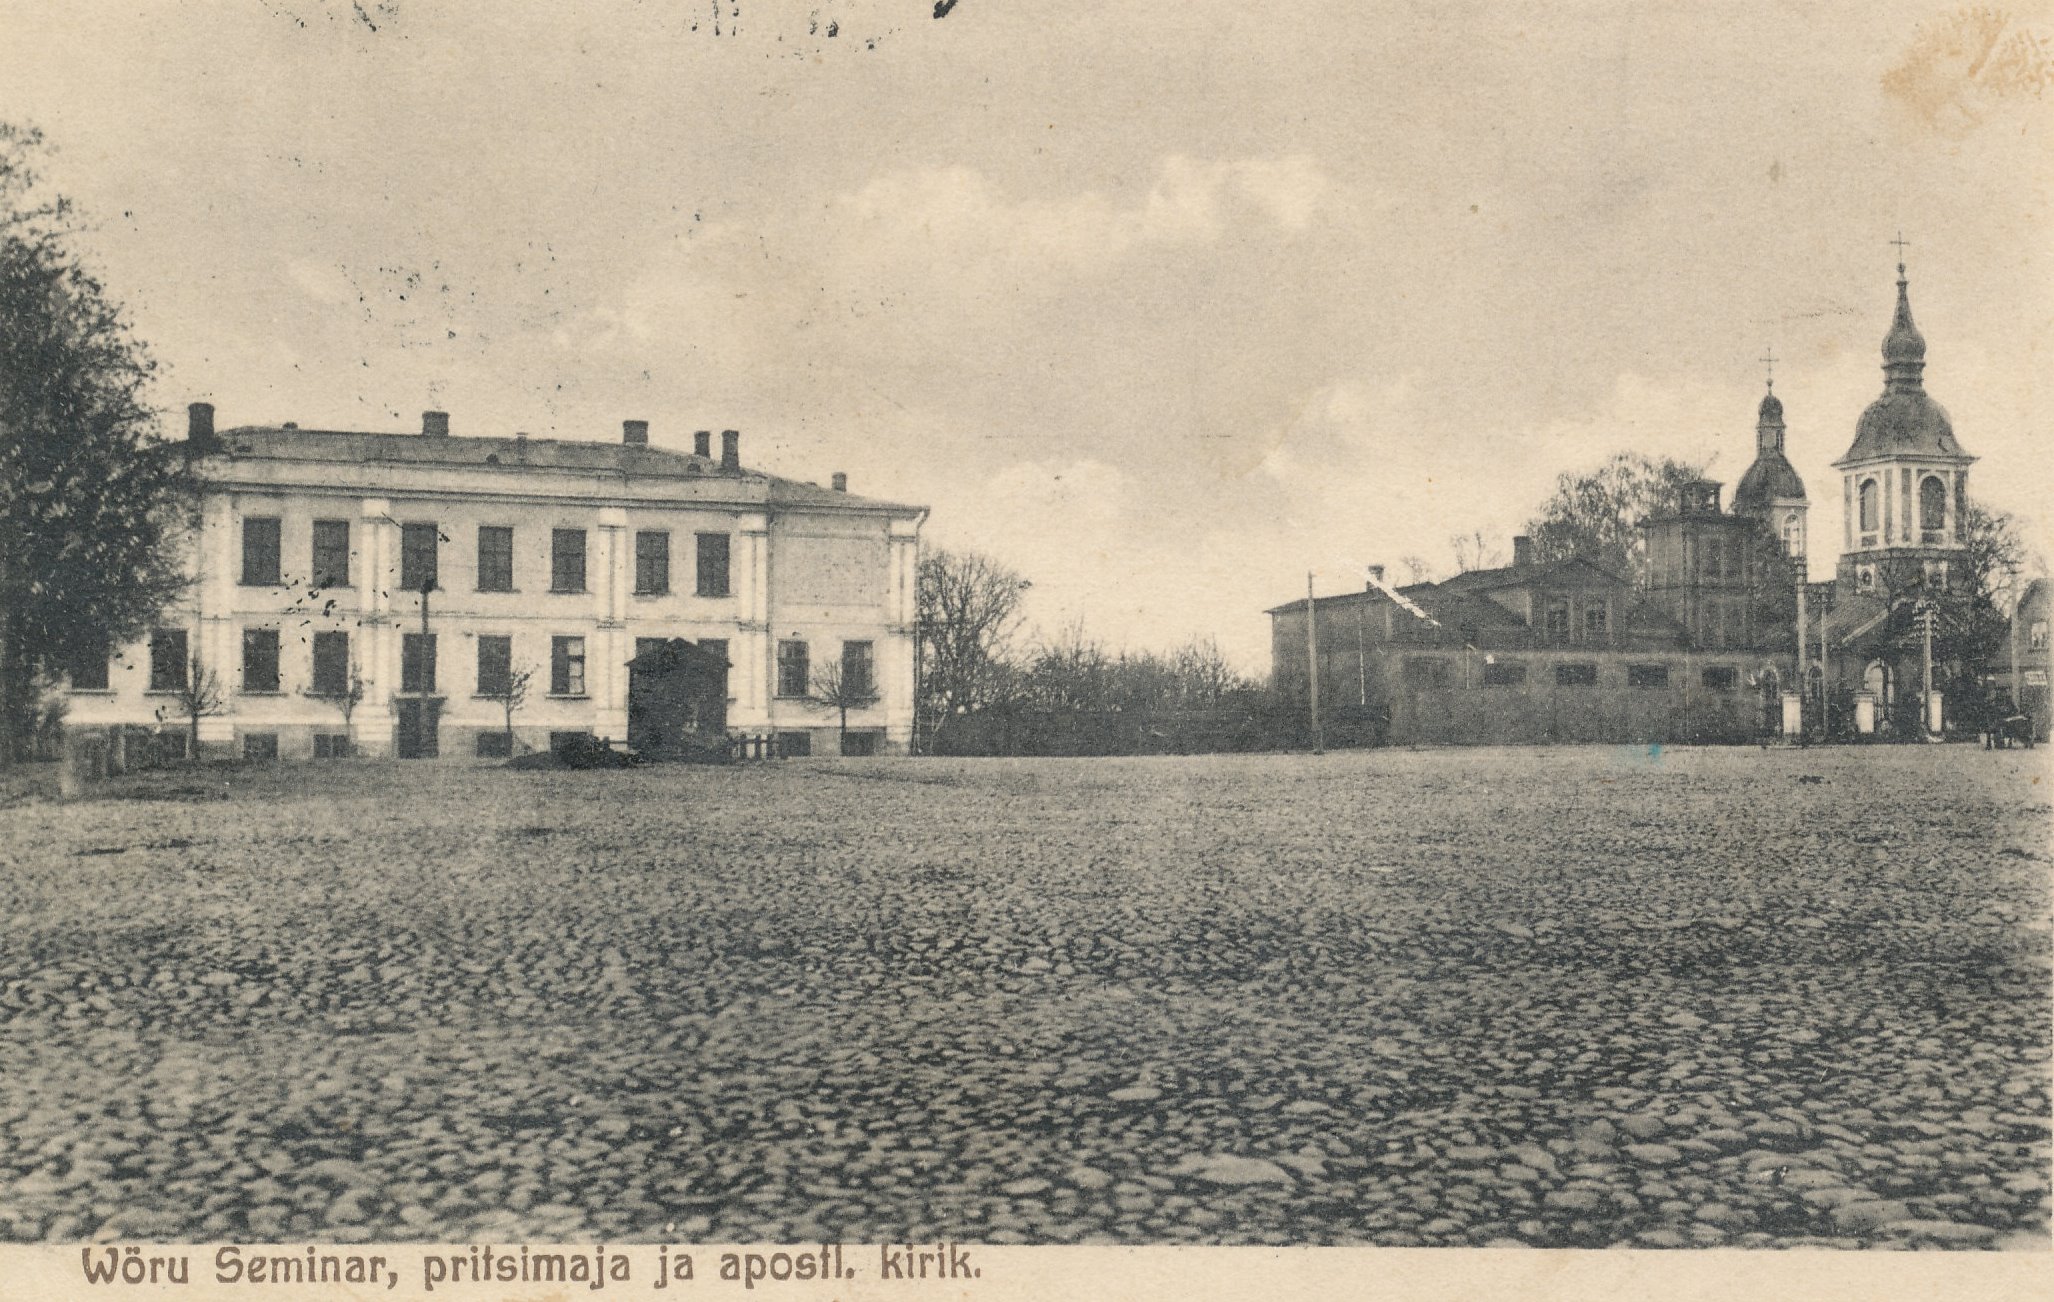 Photo postcard. Buildings located next to Võru Market Square - Võru Teachers Seminar, spray house, church of apostle Orthodox.